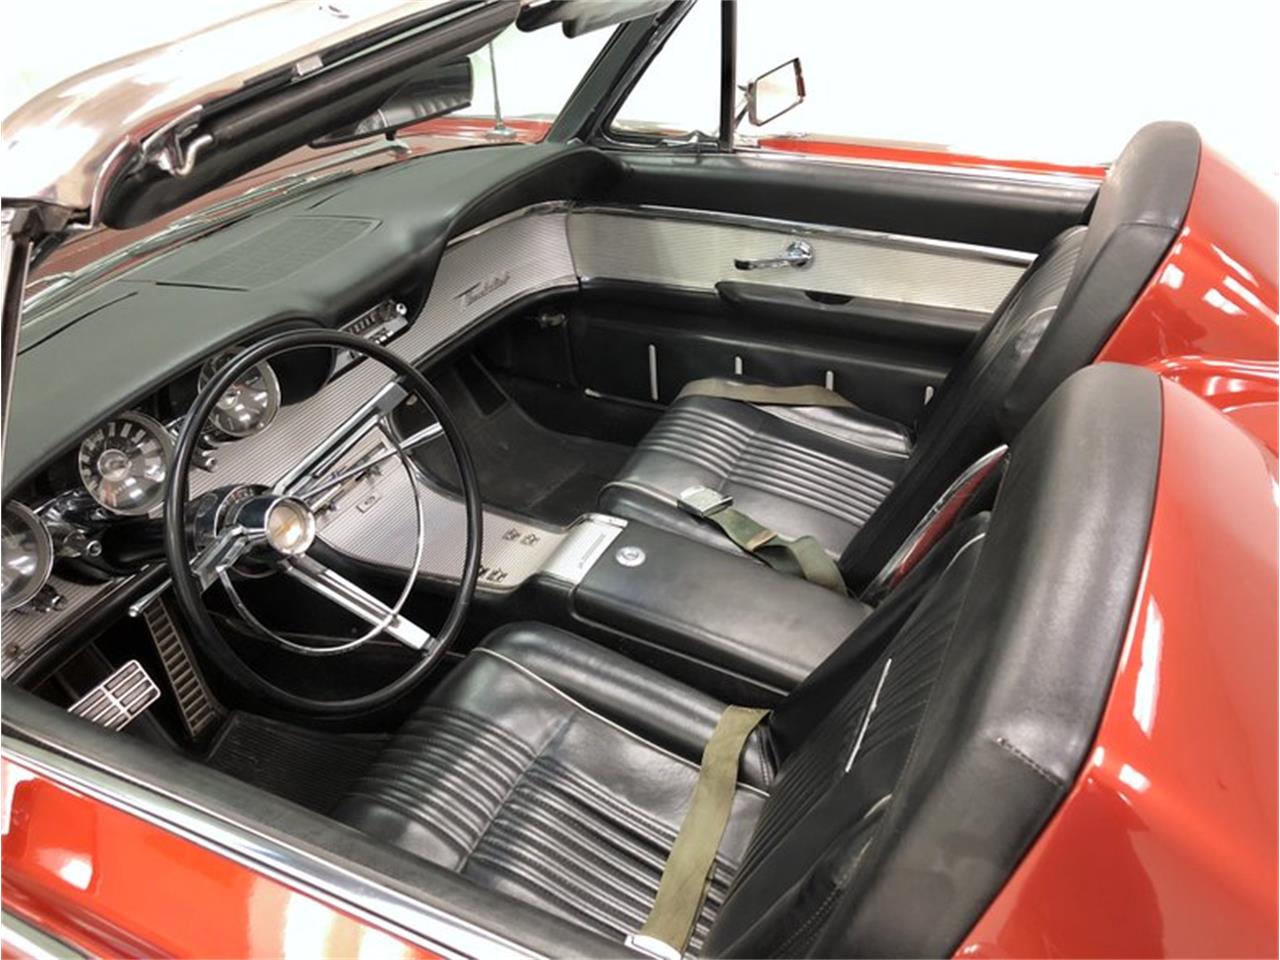 1963 ford thunderbird rear interior